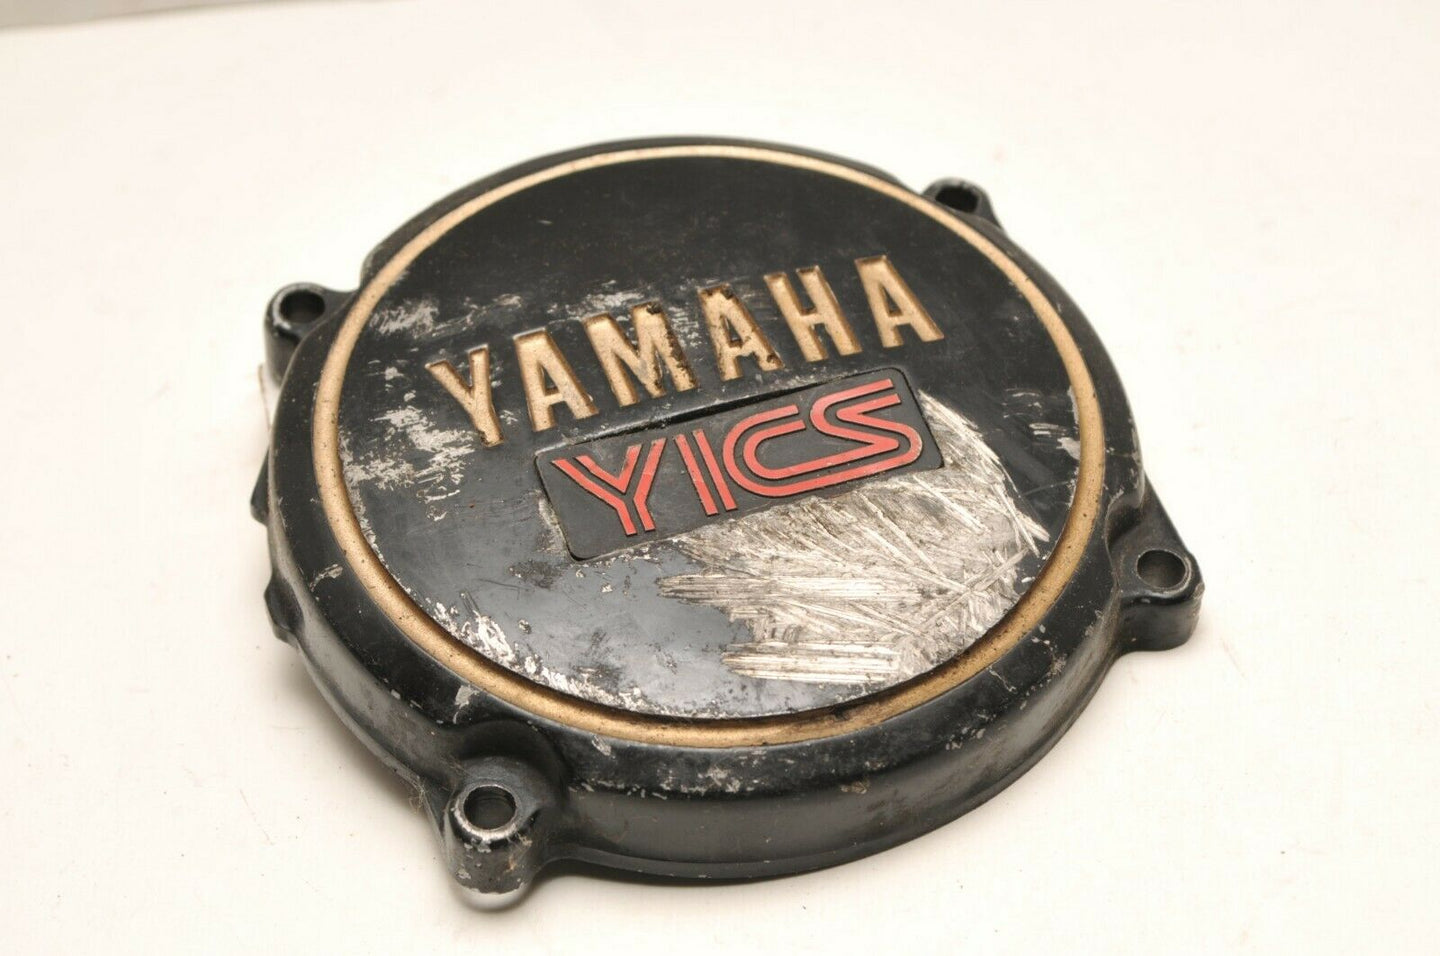 OEM Yamaha 4U8-15426-01 Seca RH Oil Pump Cover YICS 1983 #4 Black/Gold